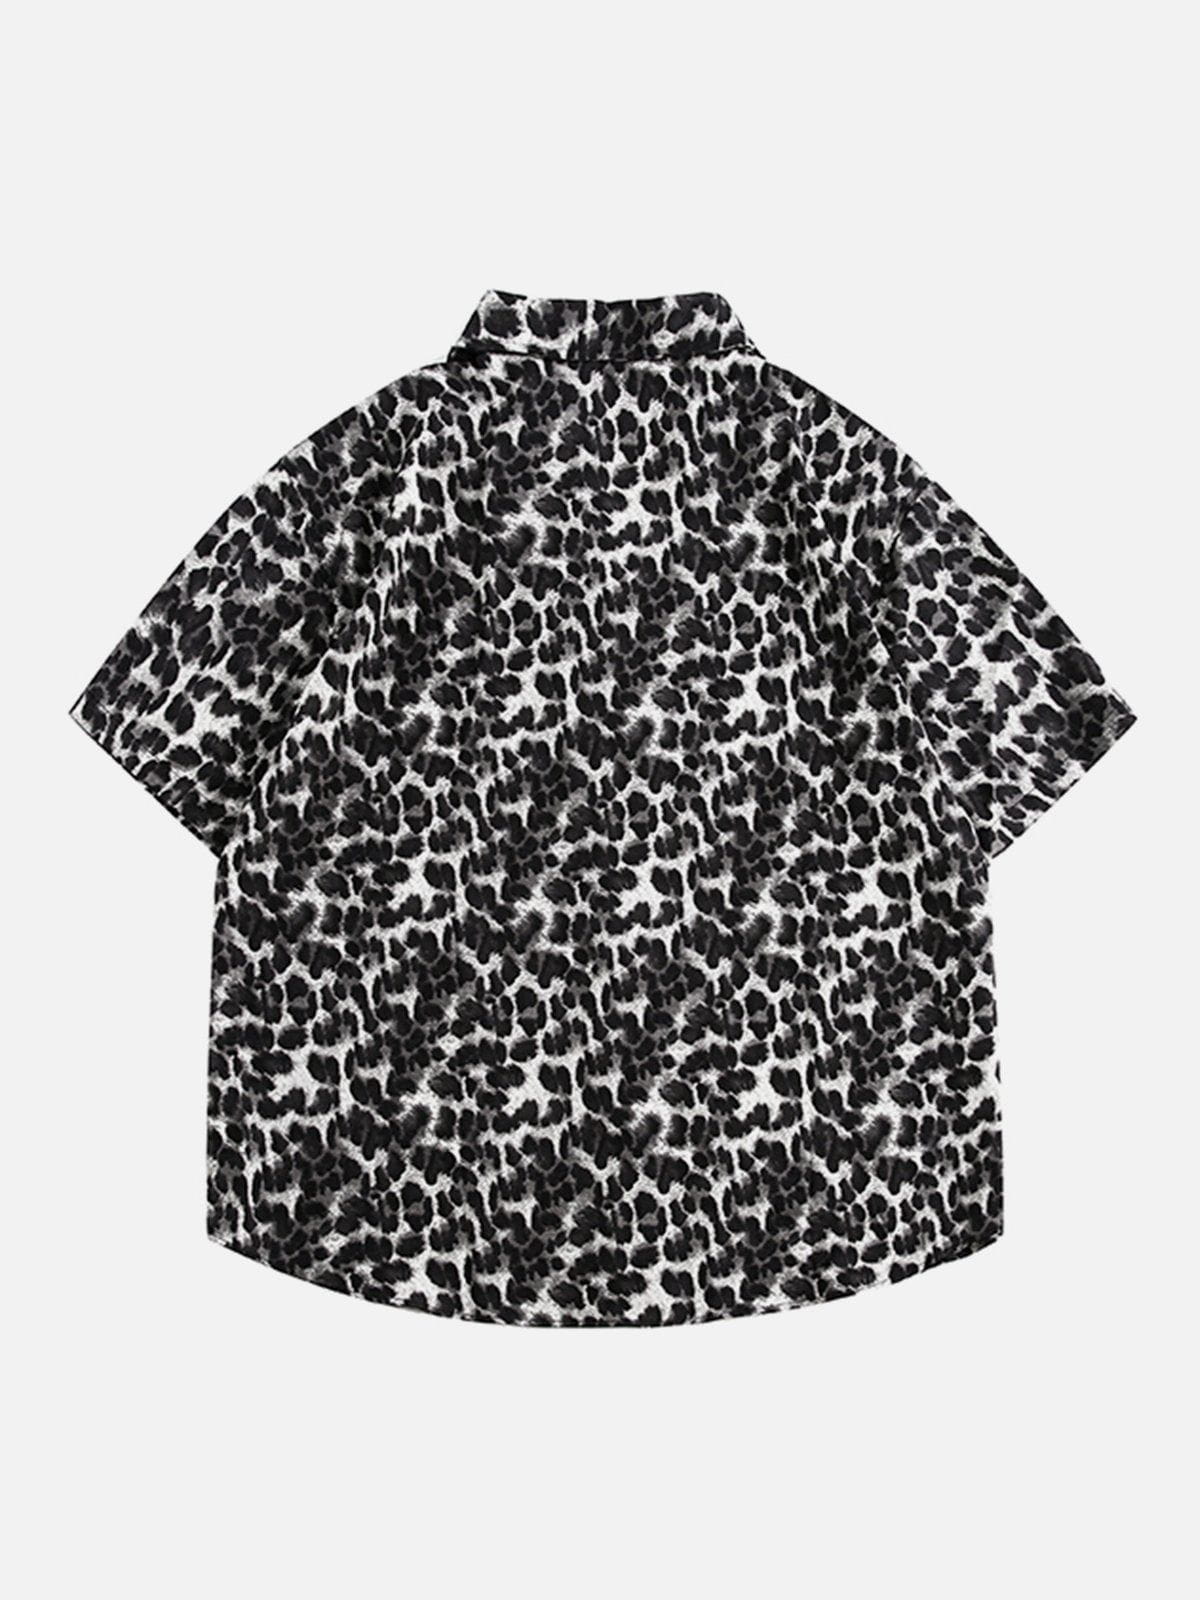 Aelfric Eden Black Leopard Print Short Sleeve Shirt